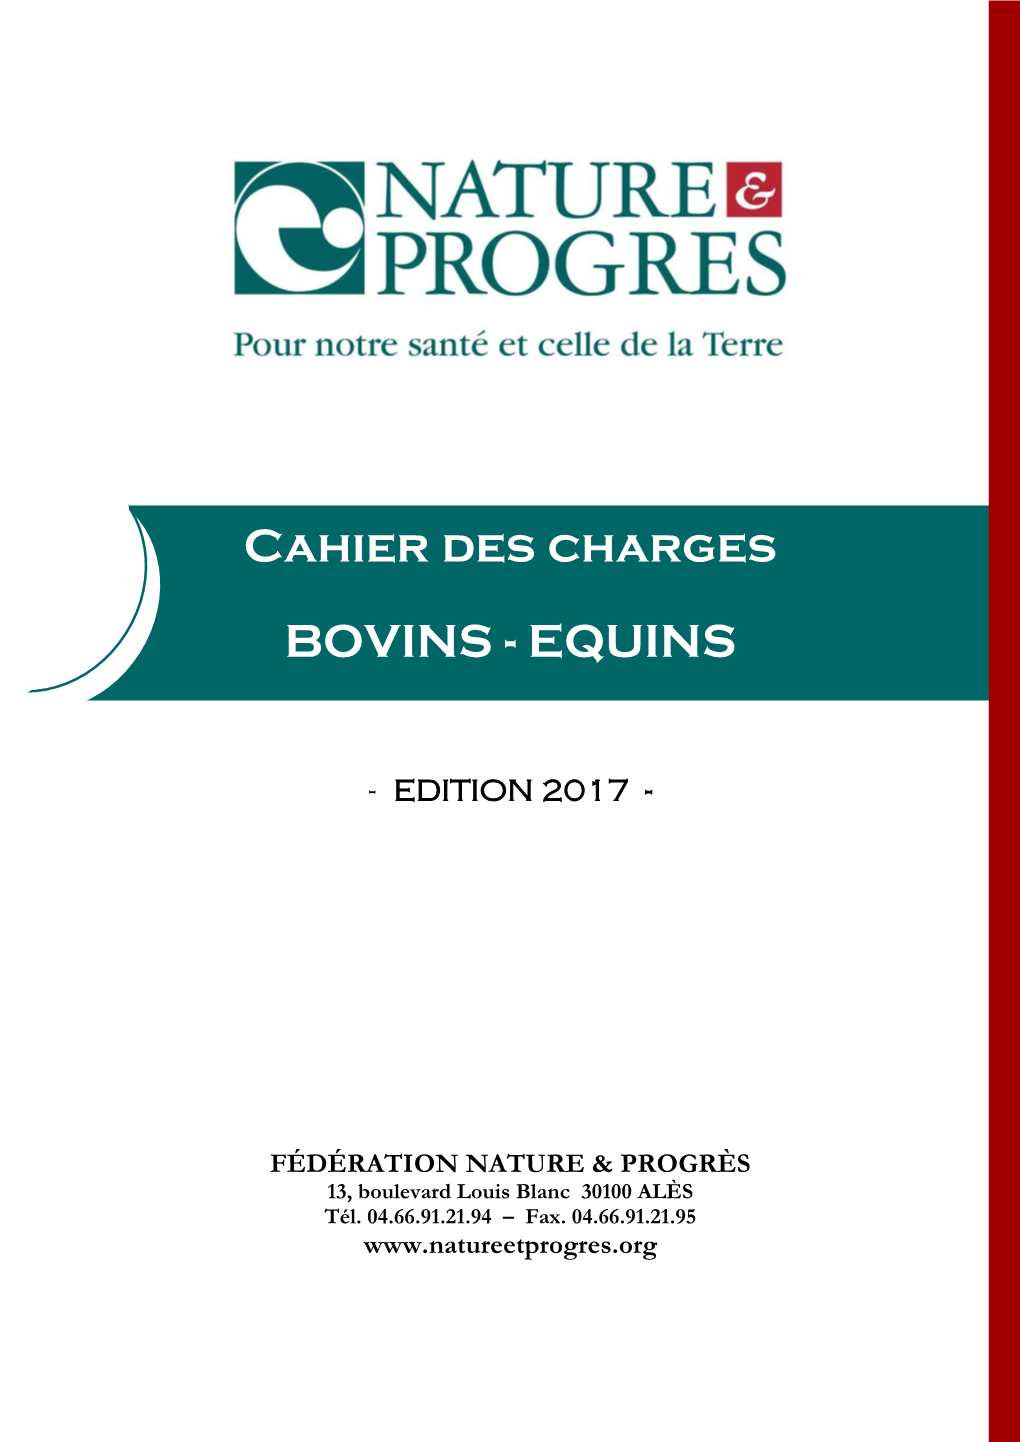 Cahier Des Charges Bovins Et Équins De Nature & Progrès Comprend Trois Parties Interdépendantes Et Se Décompose Comme Suit